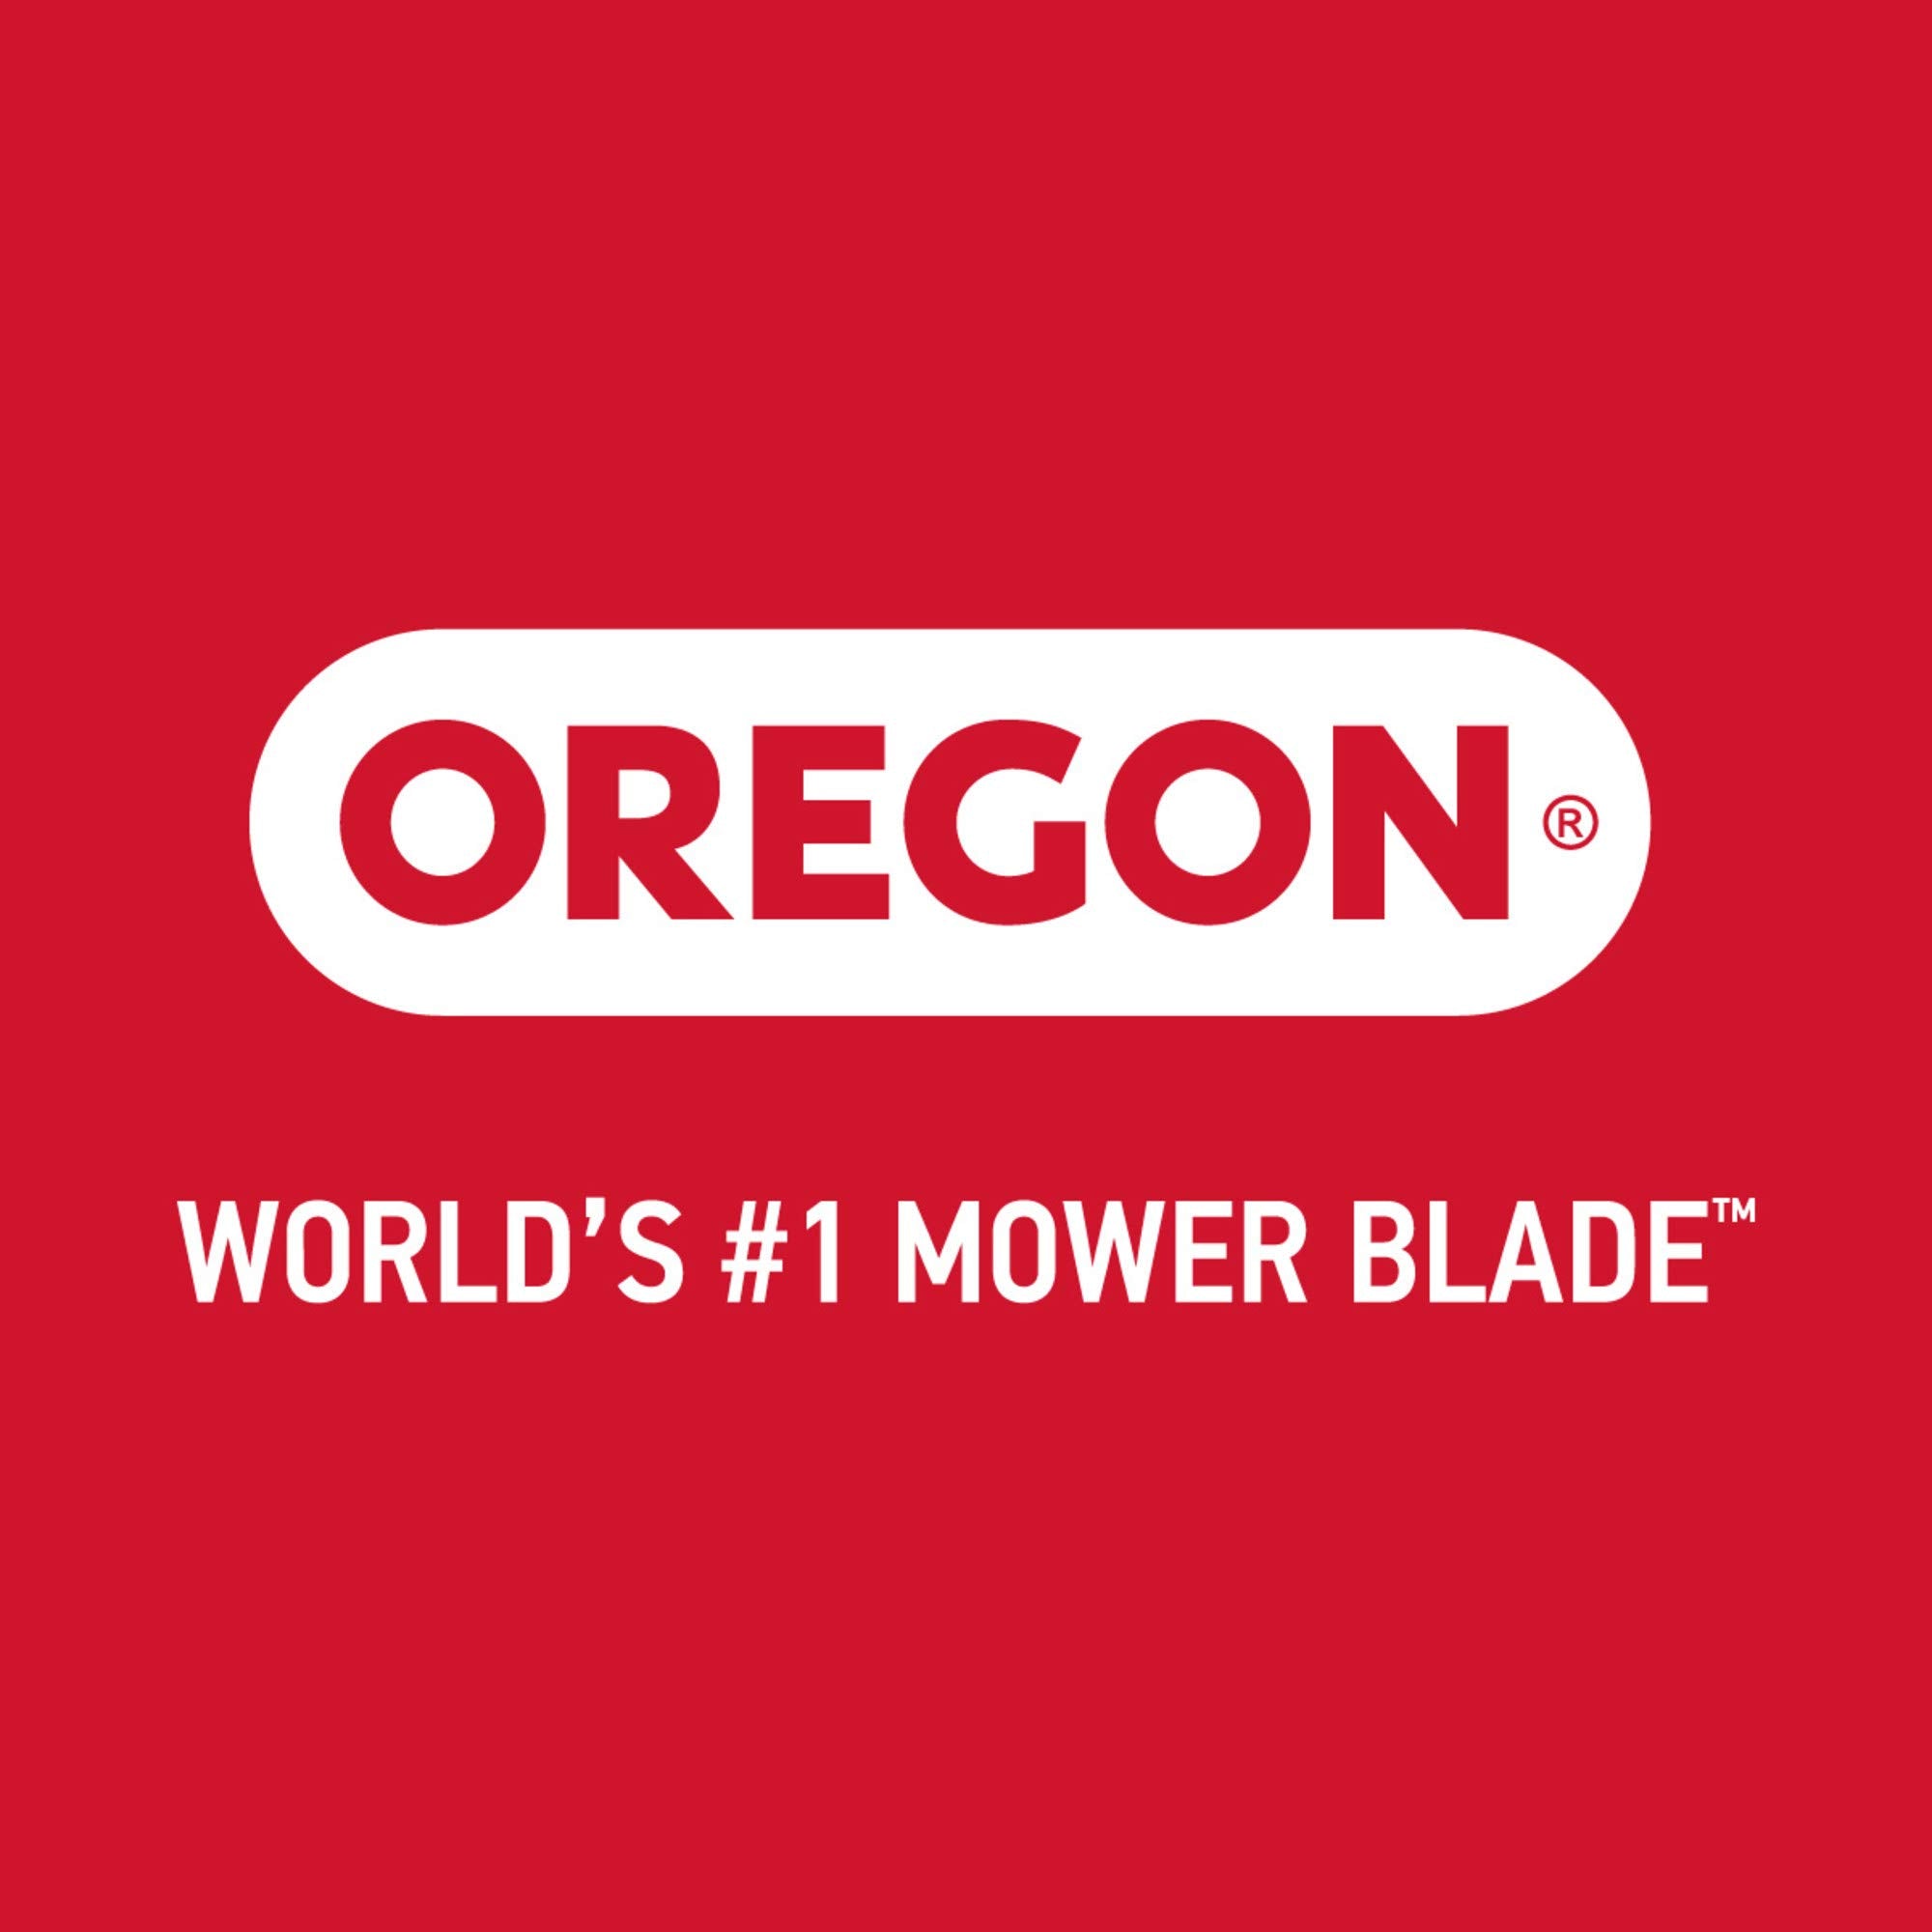 Oregon Gator Mulcher 3-N-1 Lawn Mower Blade For Toro 22-Inch Recycler 94-907 96-607